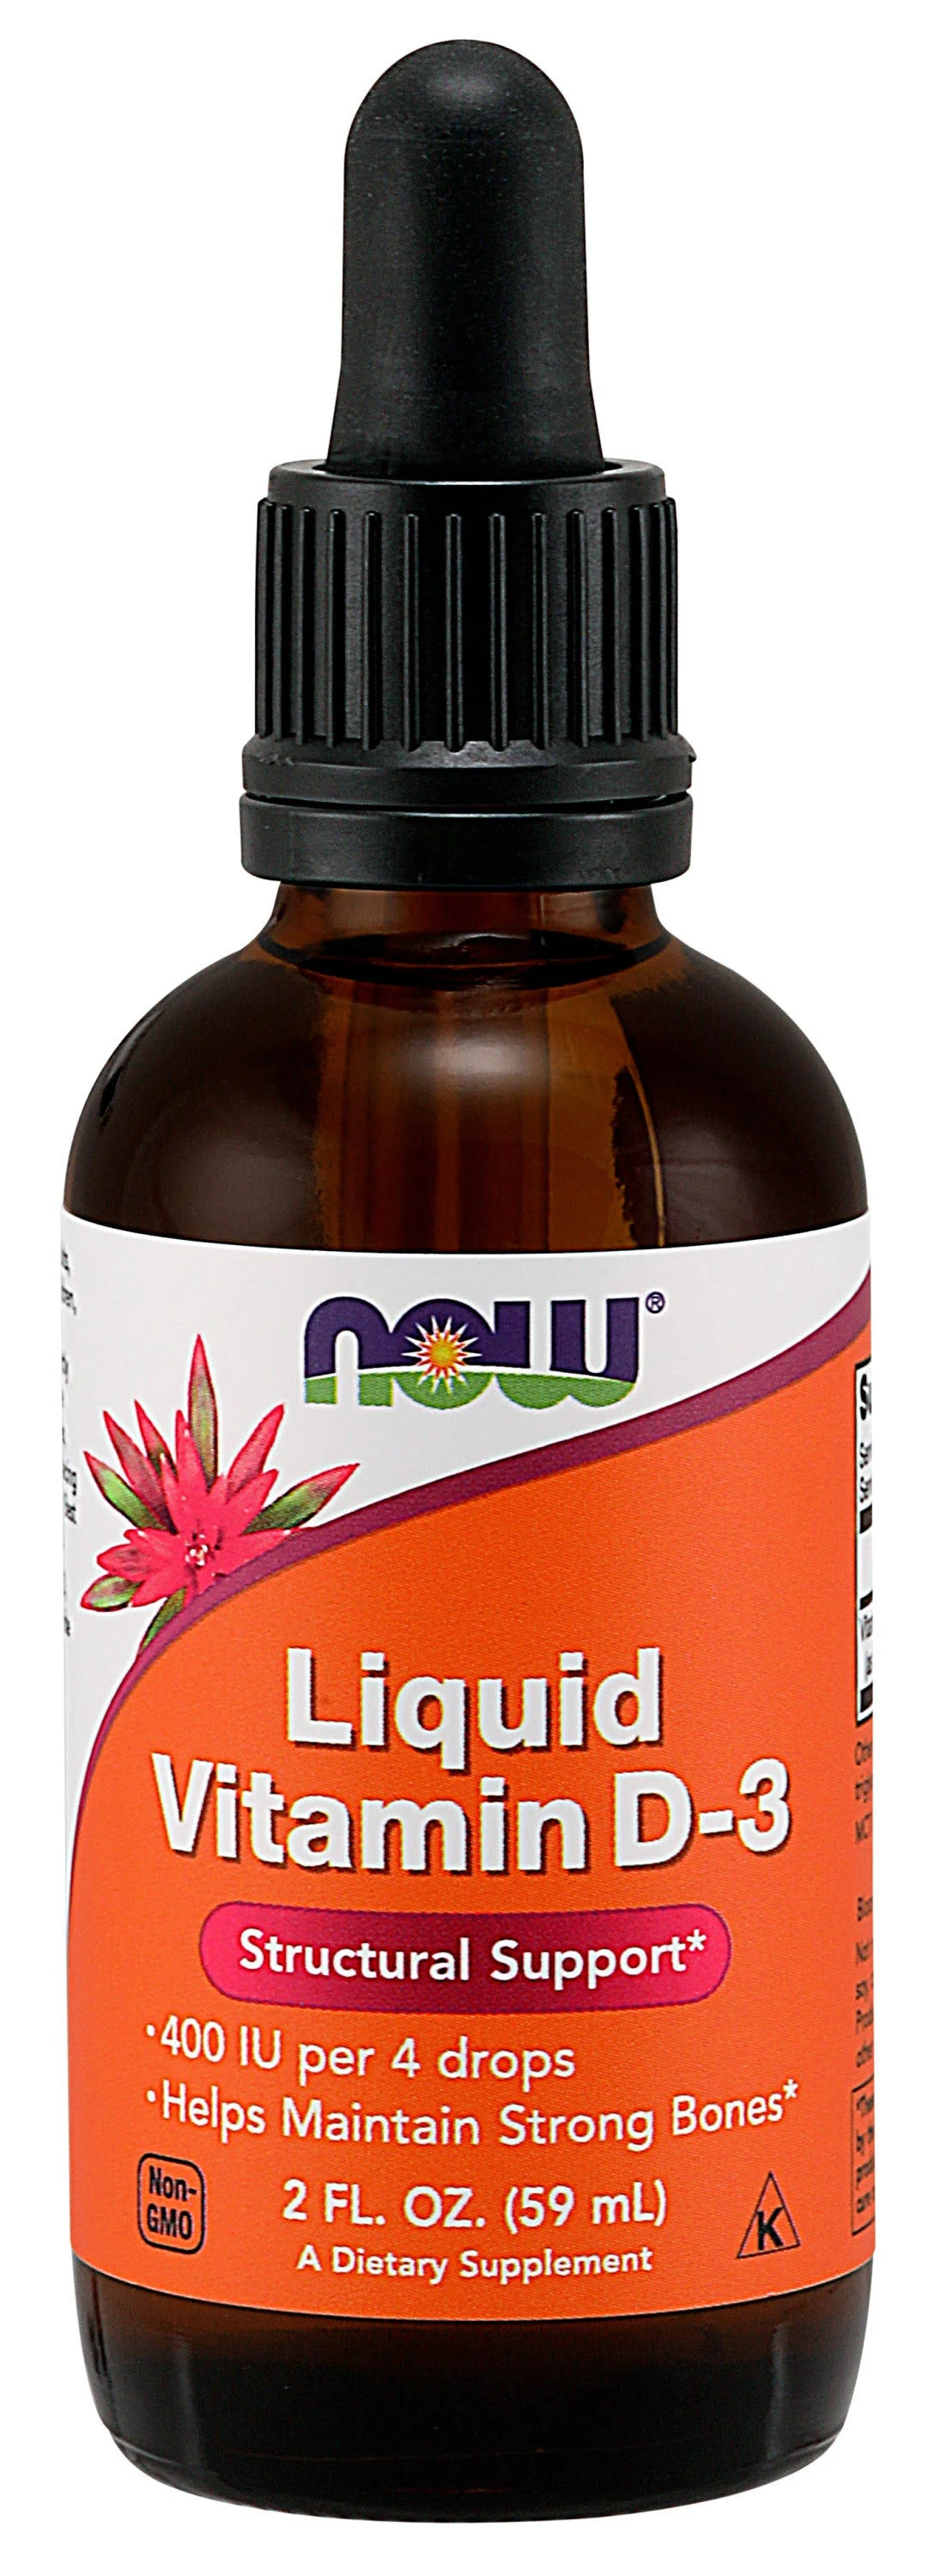 Vitamin D Liquid Oil Form